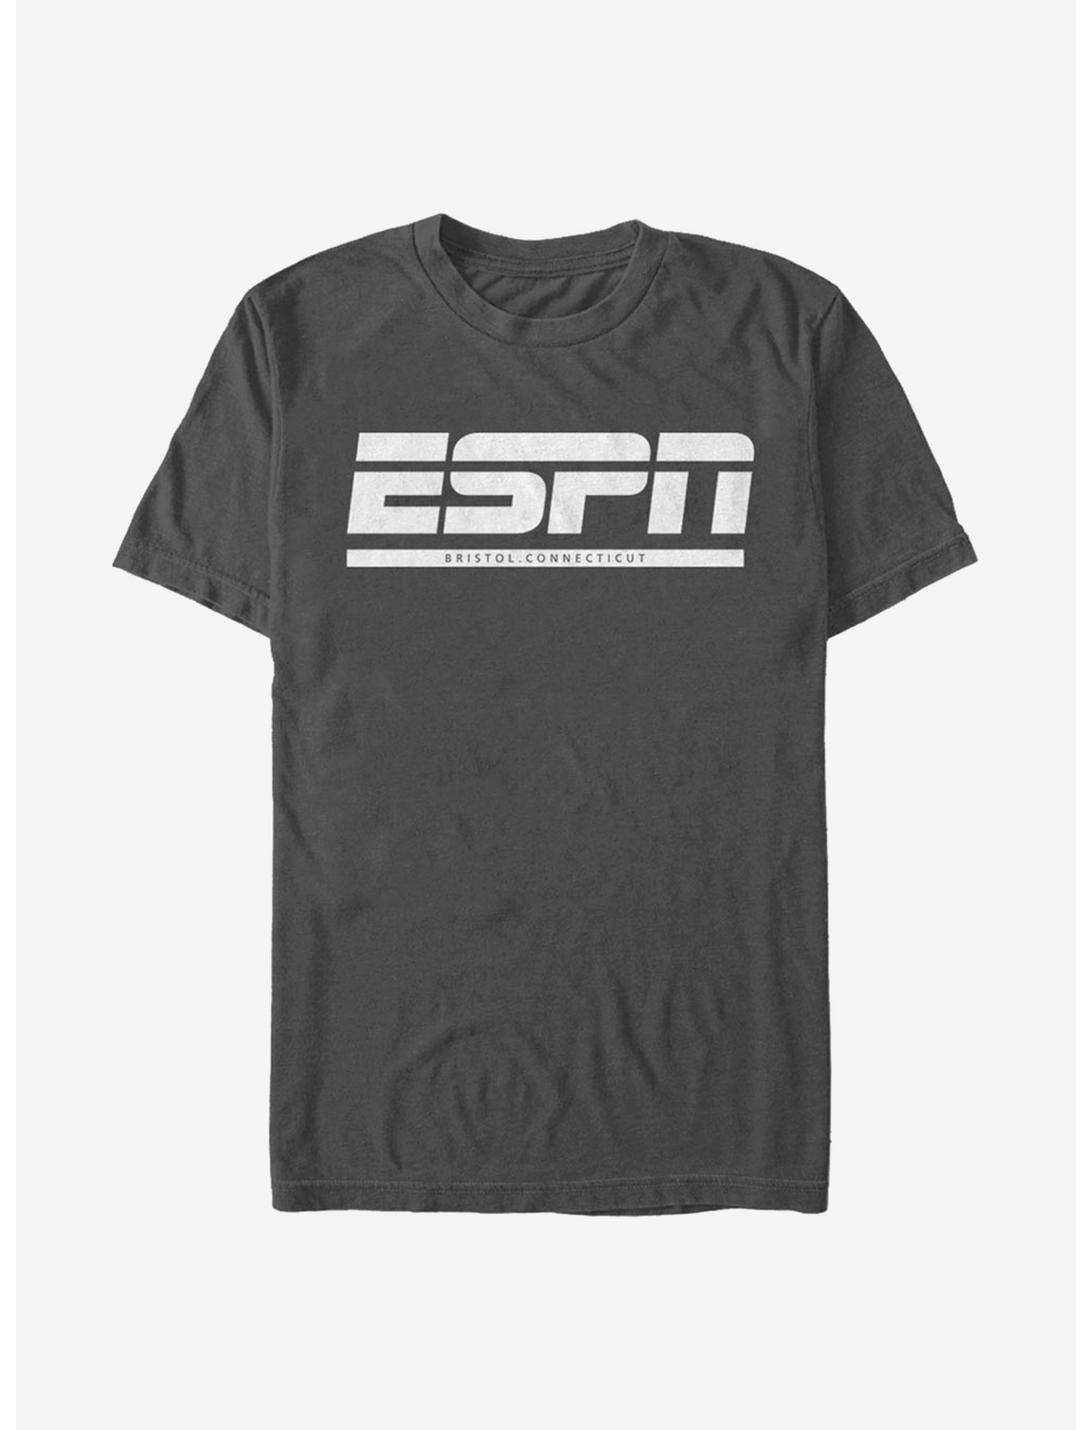 ESPN Bristol, Connecticut T-Shirt, CHARCOAL, hi-res